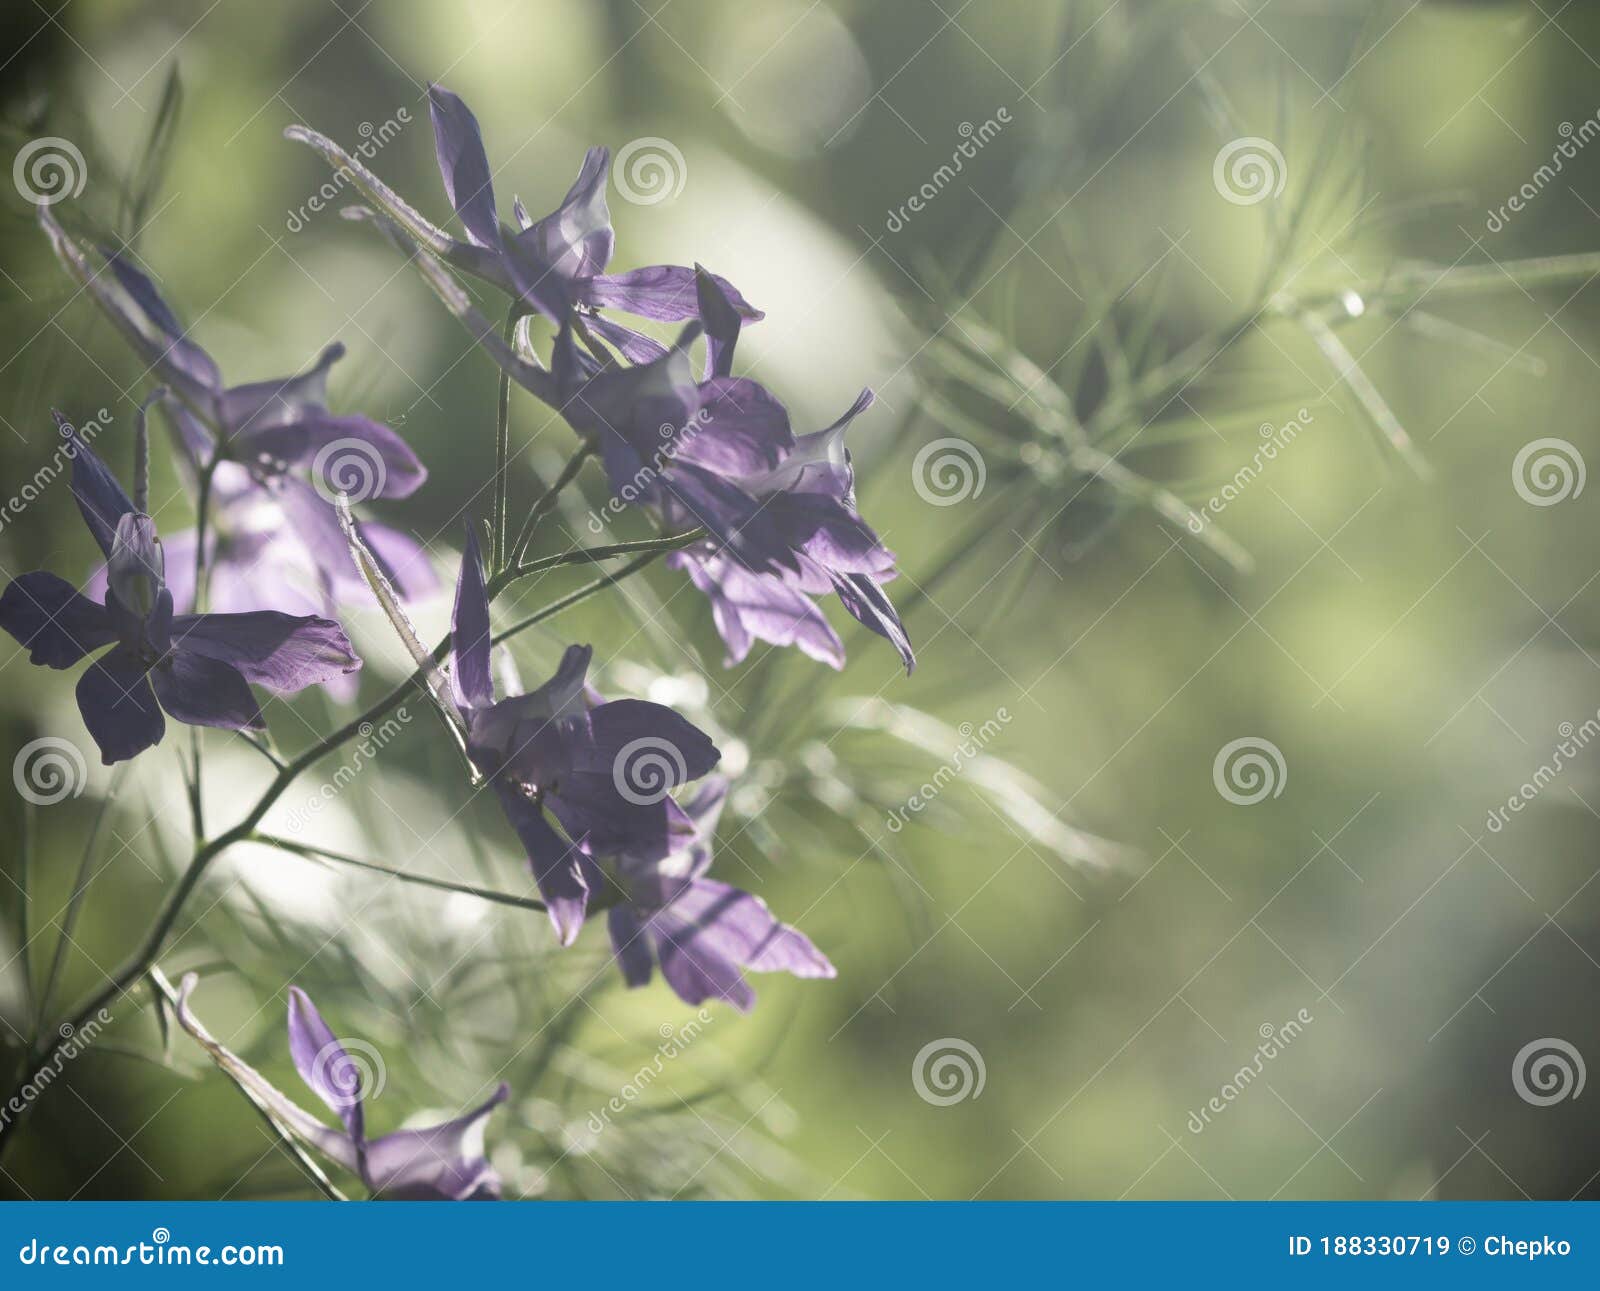 defocused bokeh background of wilde flowers